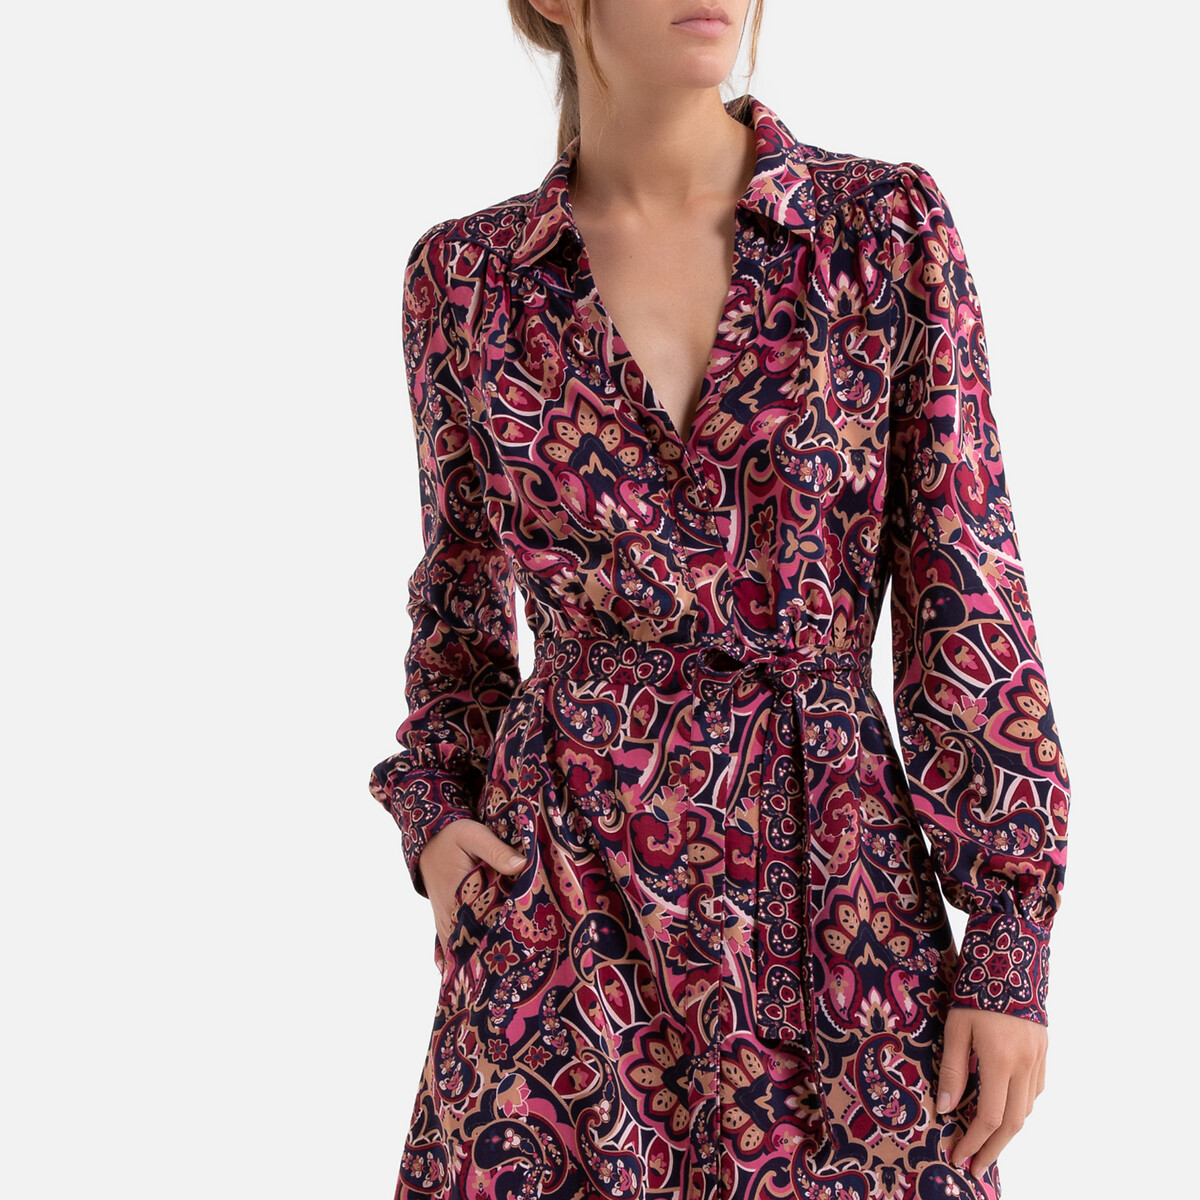 Платье La Redoute Длинное прямое с кашемировым рисунком 0(XS) розовый, размер 0(XS) Длинное прямое с кашемировым рисунком 0(XS) розовый - фото 2